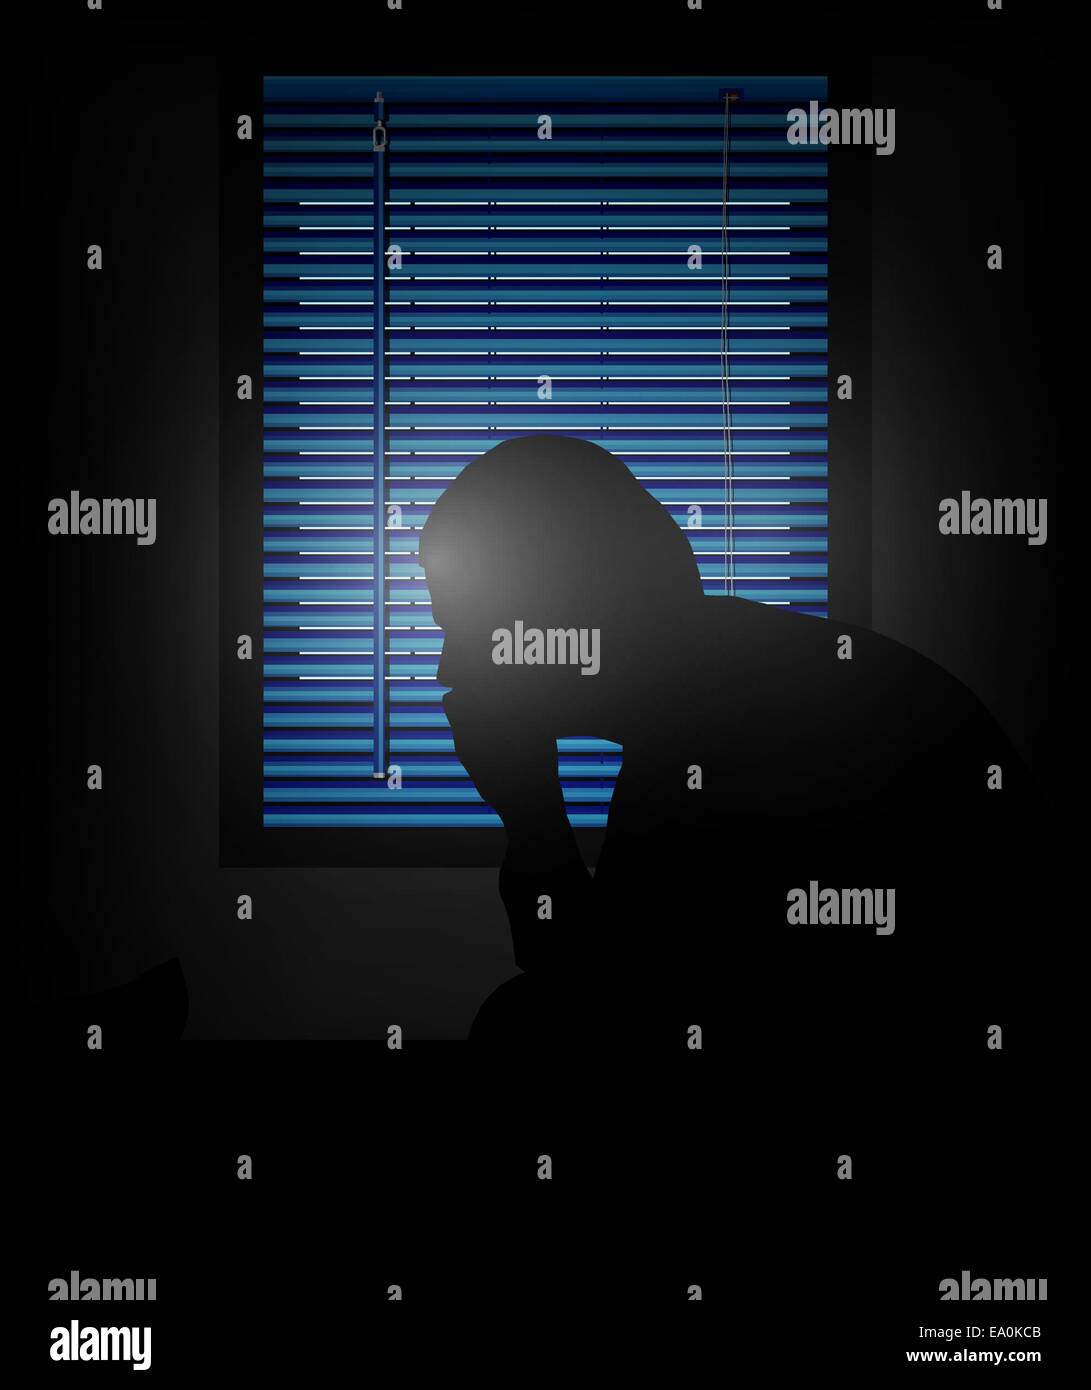 Vektor-Silhouette des einsamen Mannes vor dem Fenster, eps10 Datei, Verlaufsgitter und Transparenz verwendet Stock Vektor